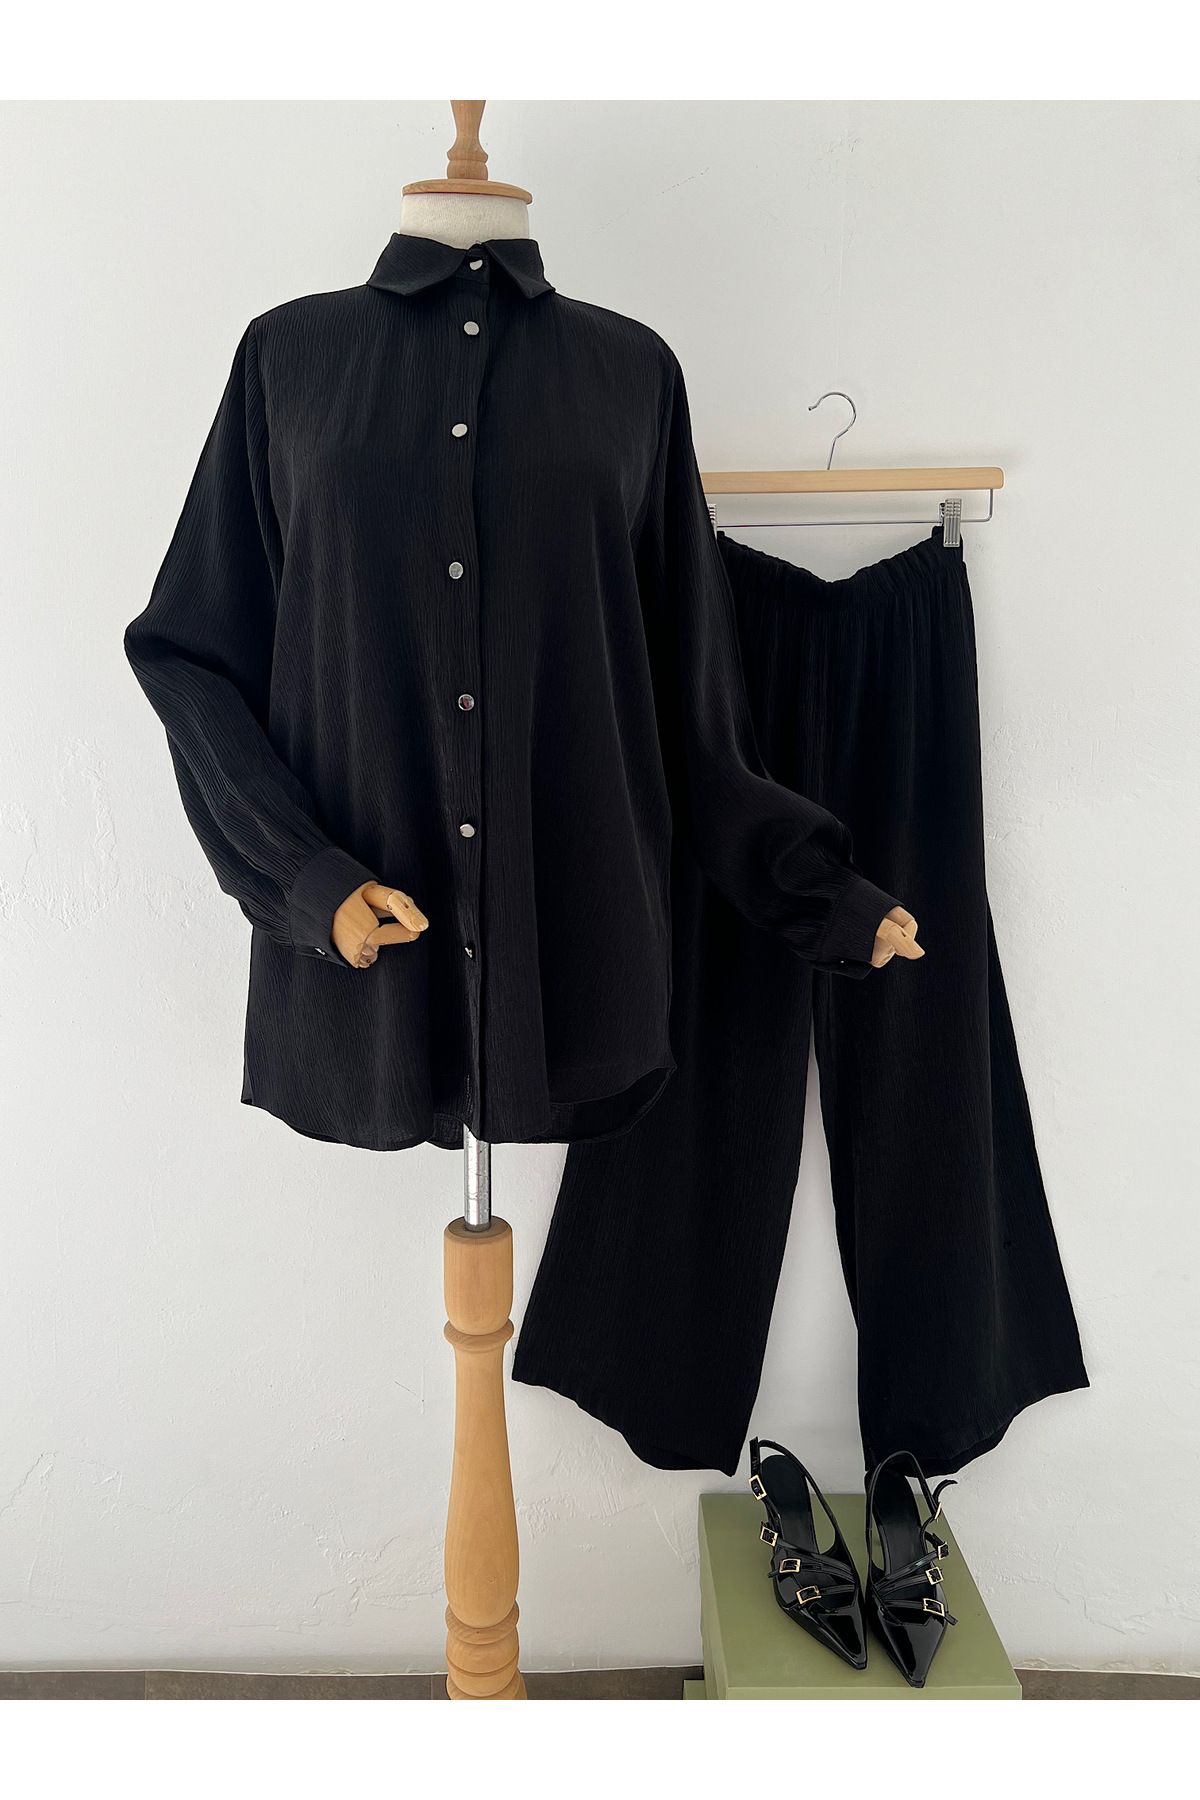 hepsi moda Pırıltılı Saten Takım - 4056 - SG - Siyah